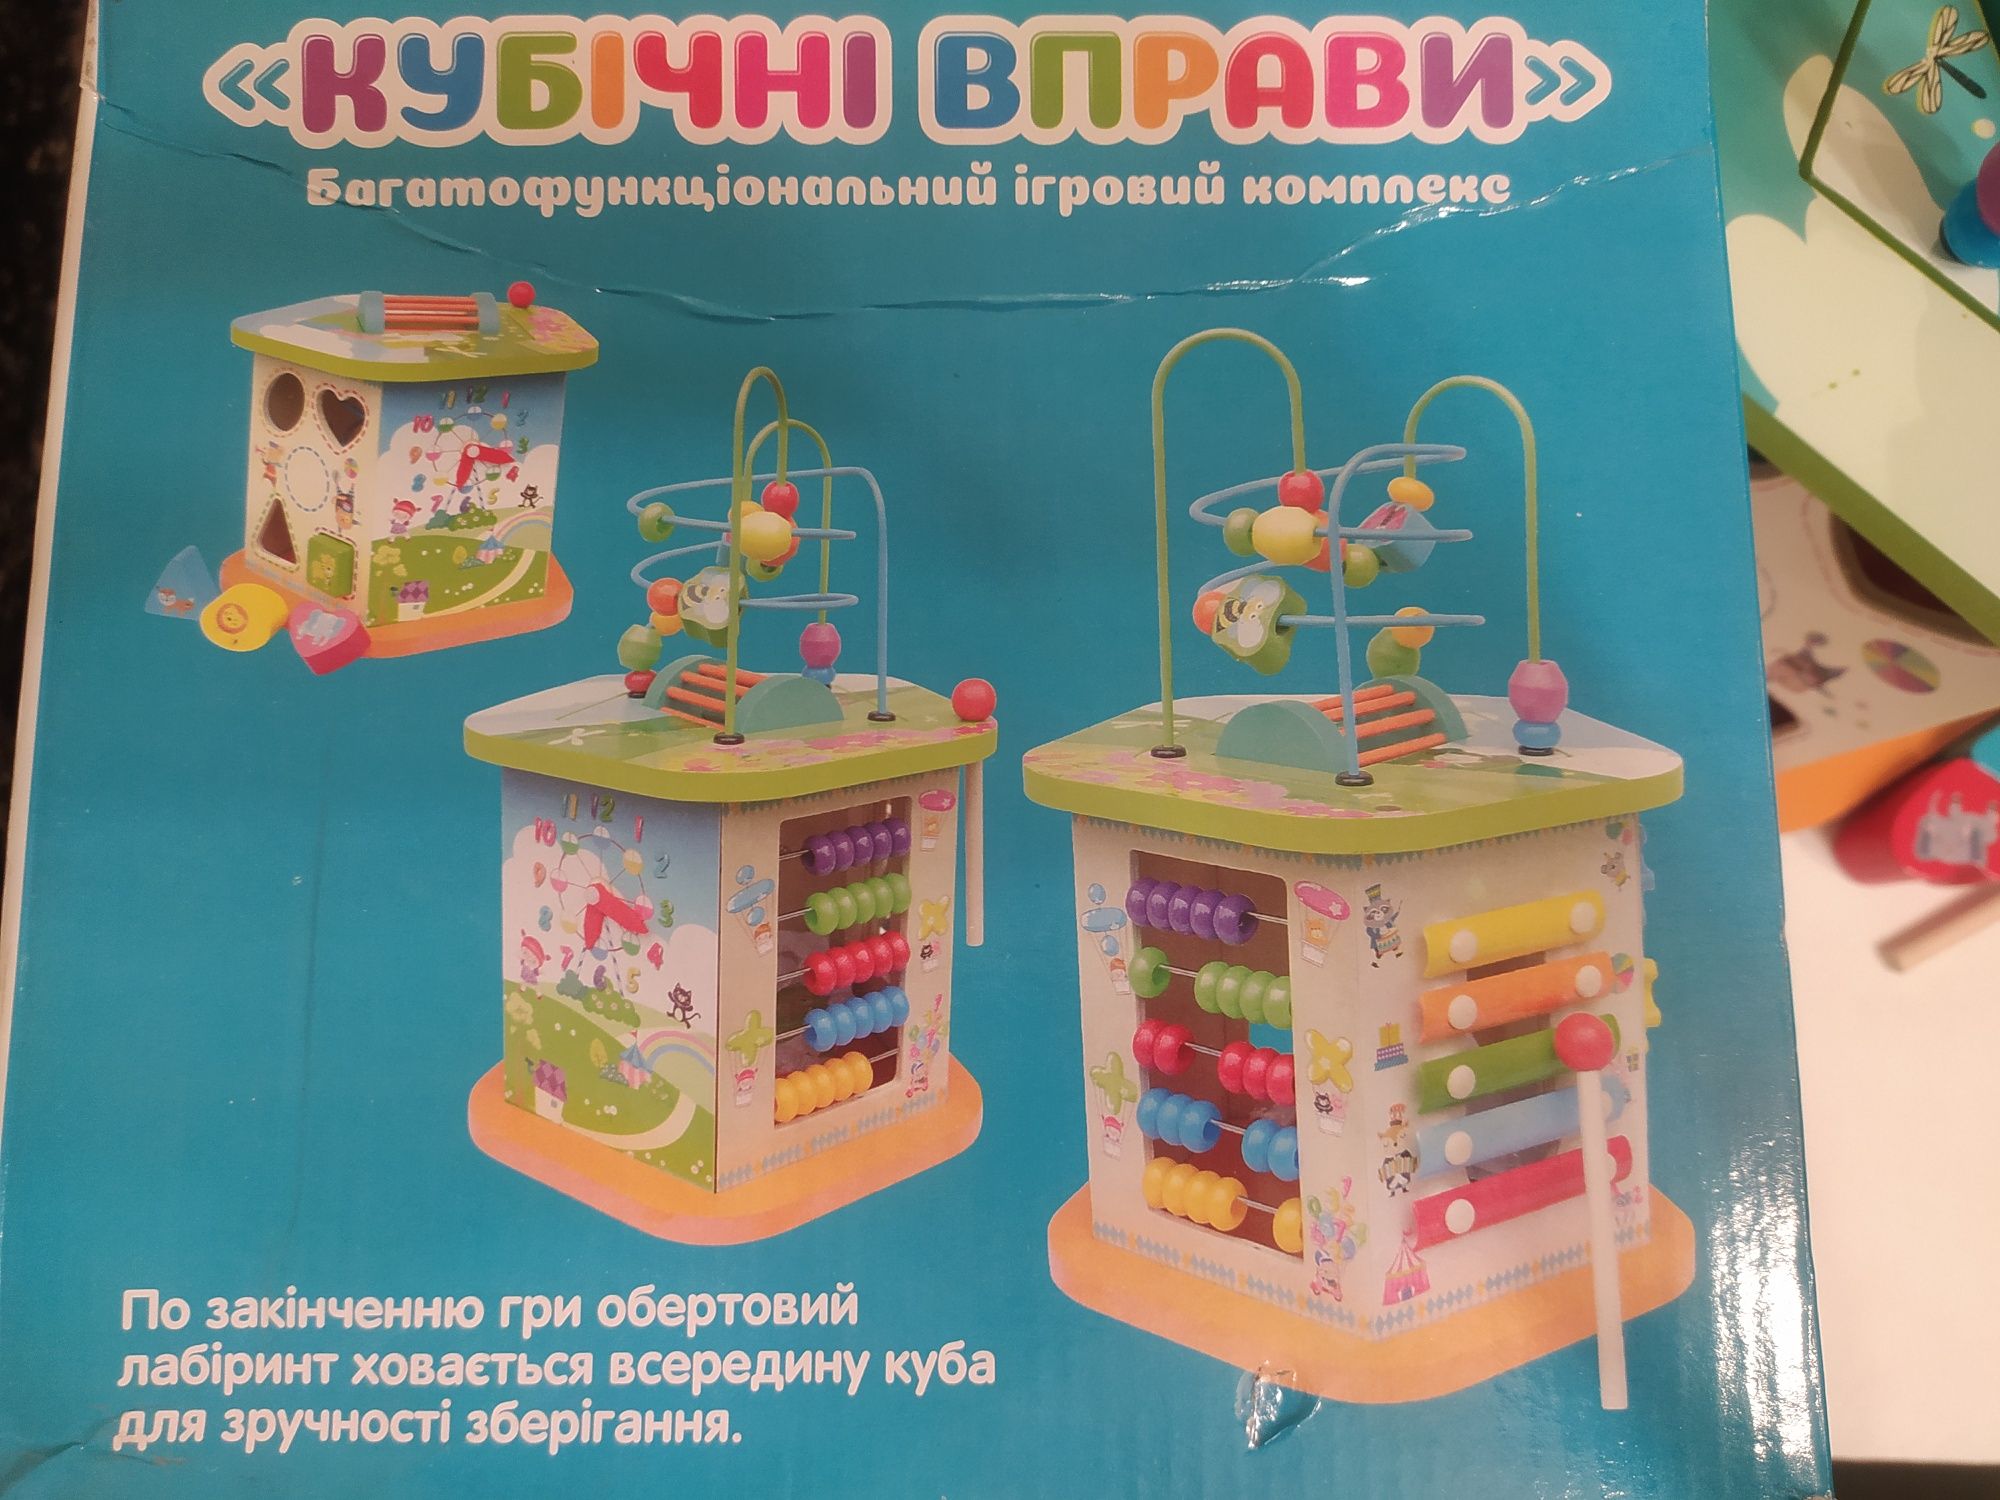 Іграшка Кубічні вправи / Развивающая игрушка Куб